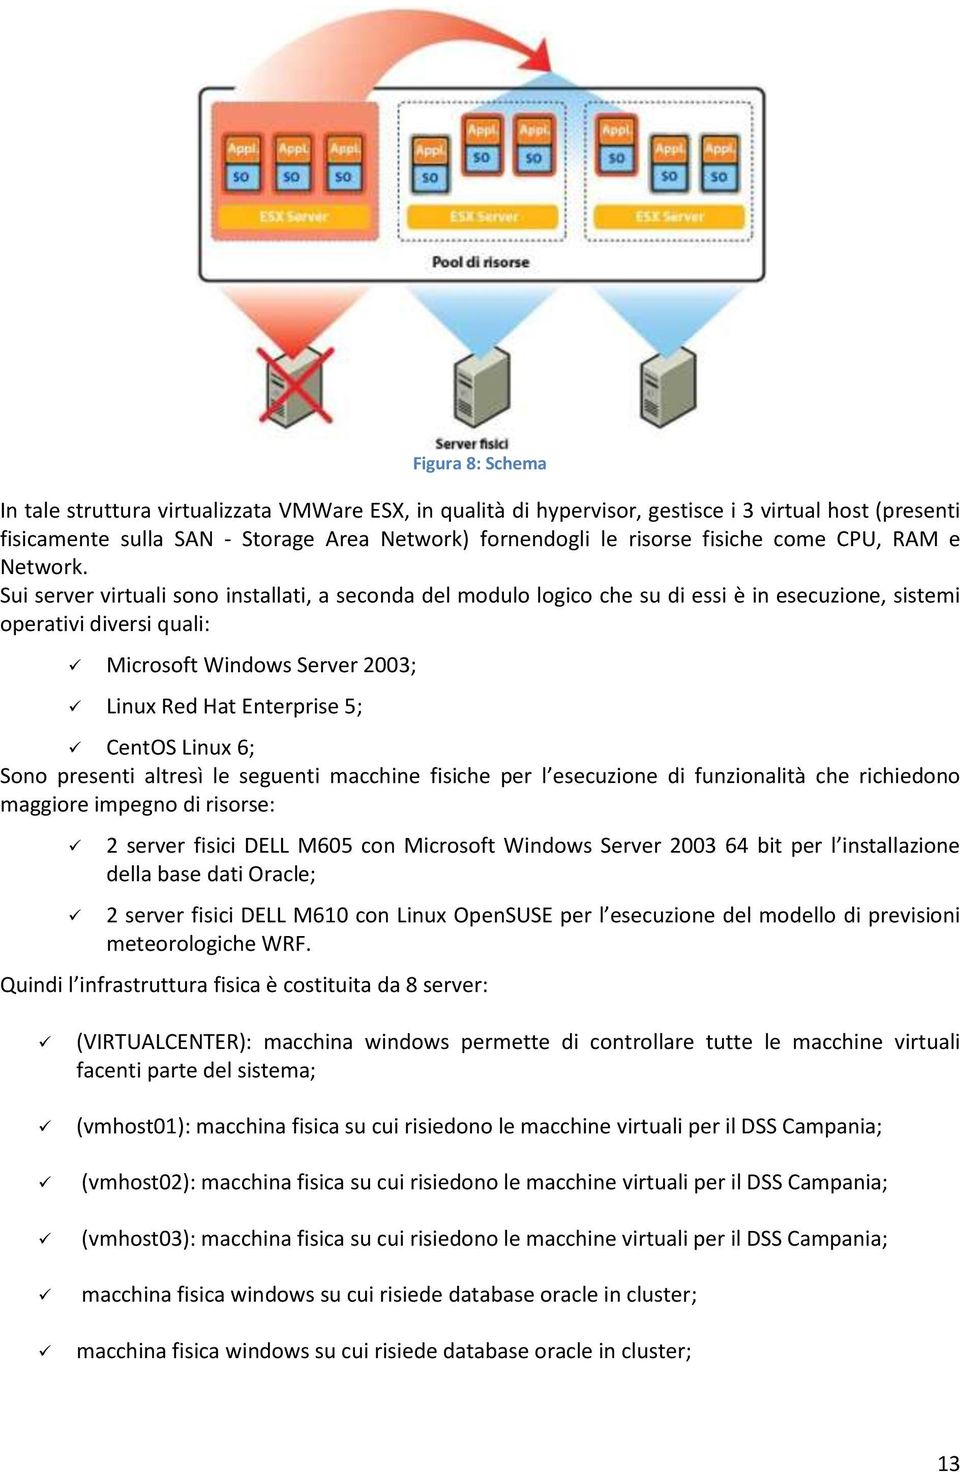 Sui server virtuali sono installati, a seconda del modulo logico che su di essi è in esecuzione, sistemi operativi diversi quali: Microsoft Windows Server 2003; Linux Red Hat Enterprise 5; CentOS